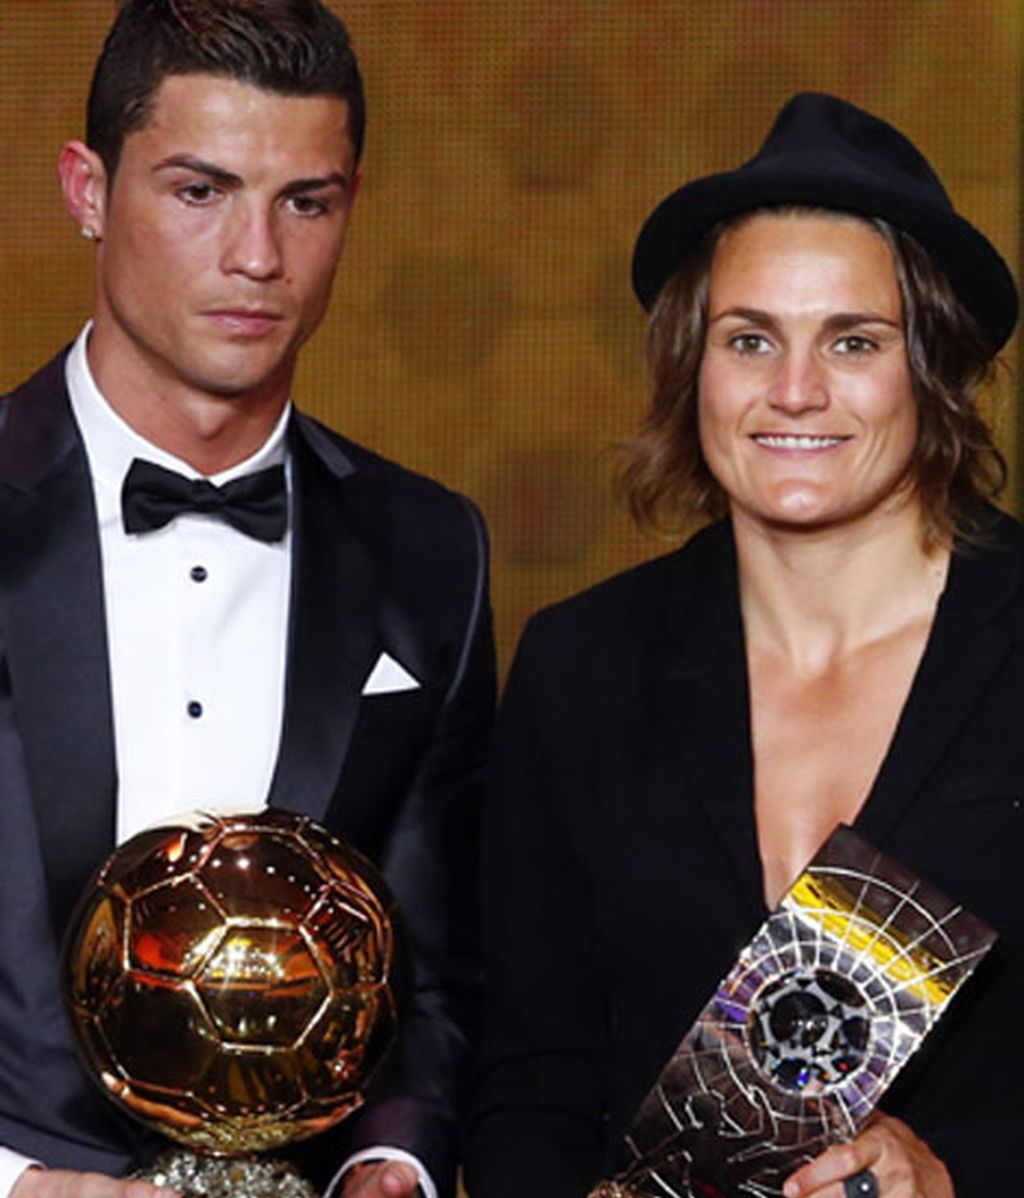 Gala de entrega del Balón de Oro-FIFA 2013